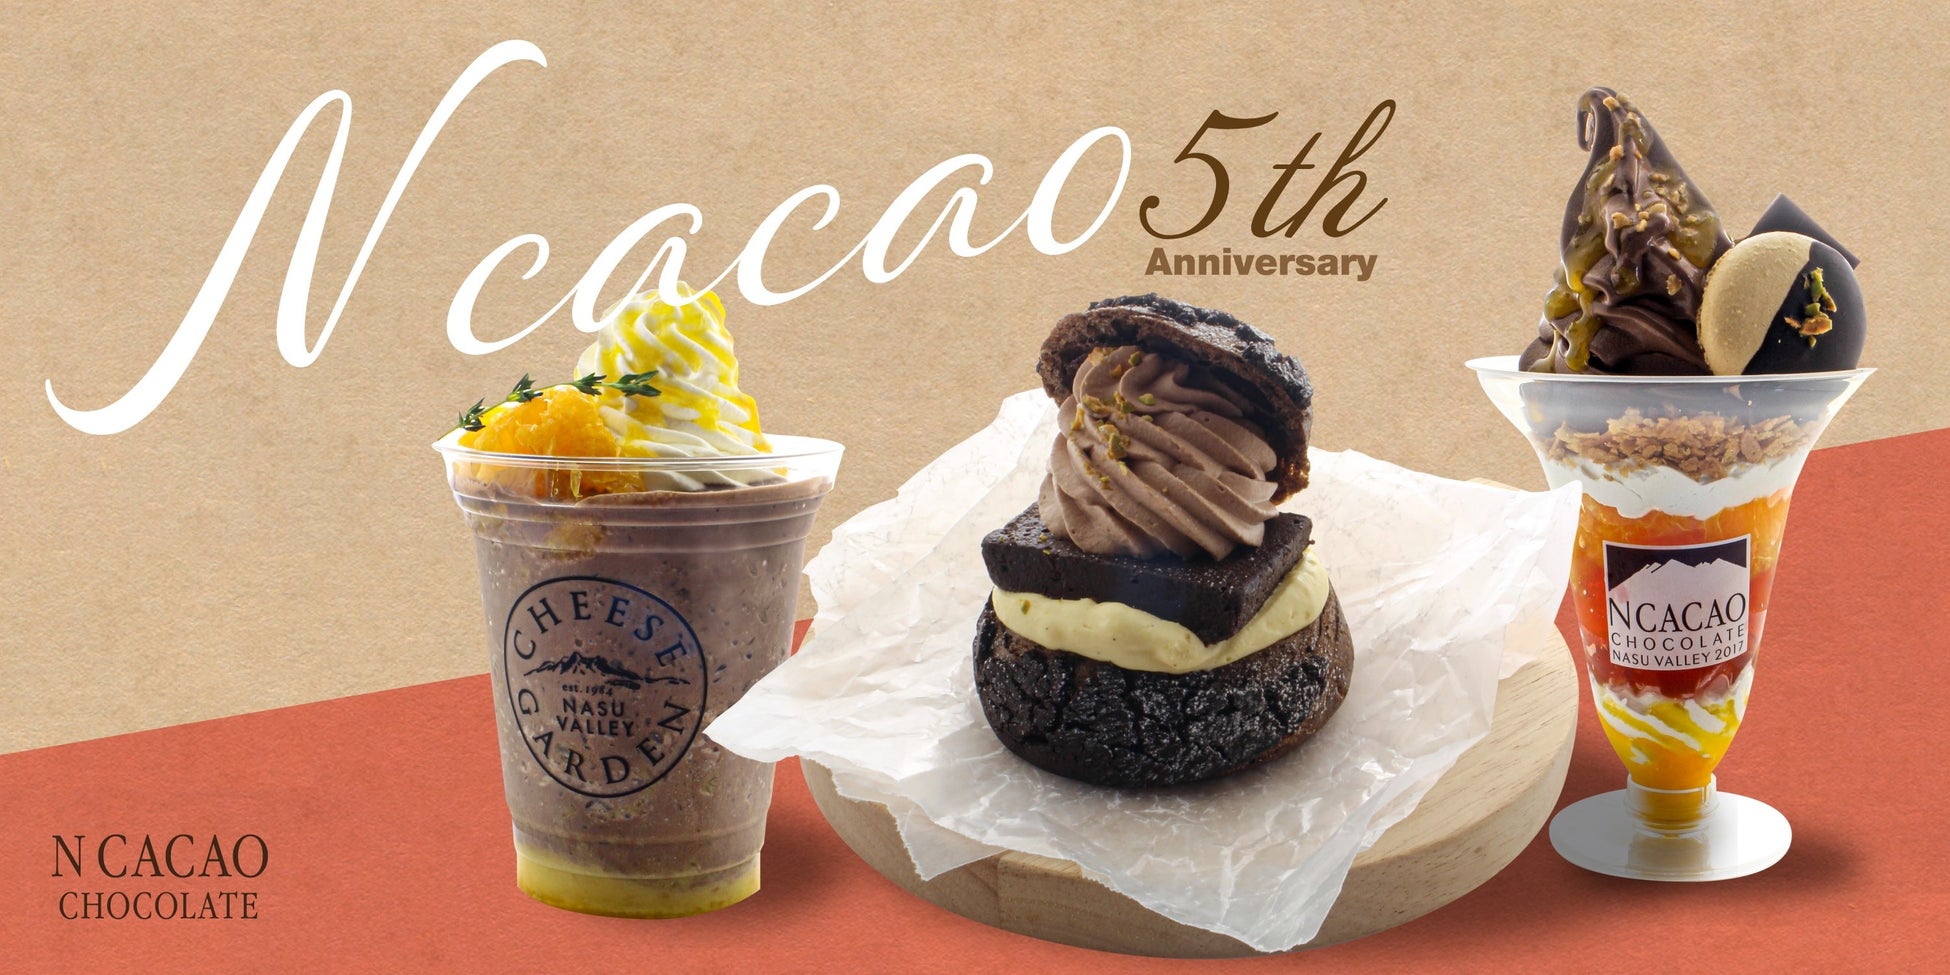 那須高原発のチョコレート菓子専門店「エヌカカオチョコレート」が5周年限定商品を発売